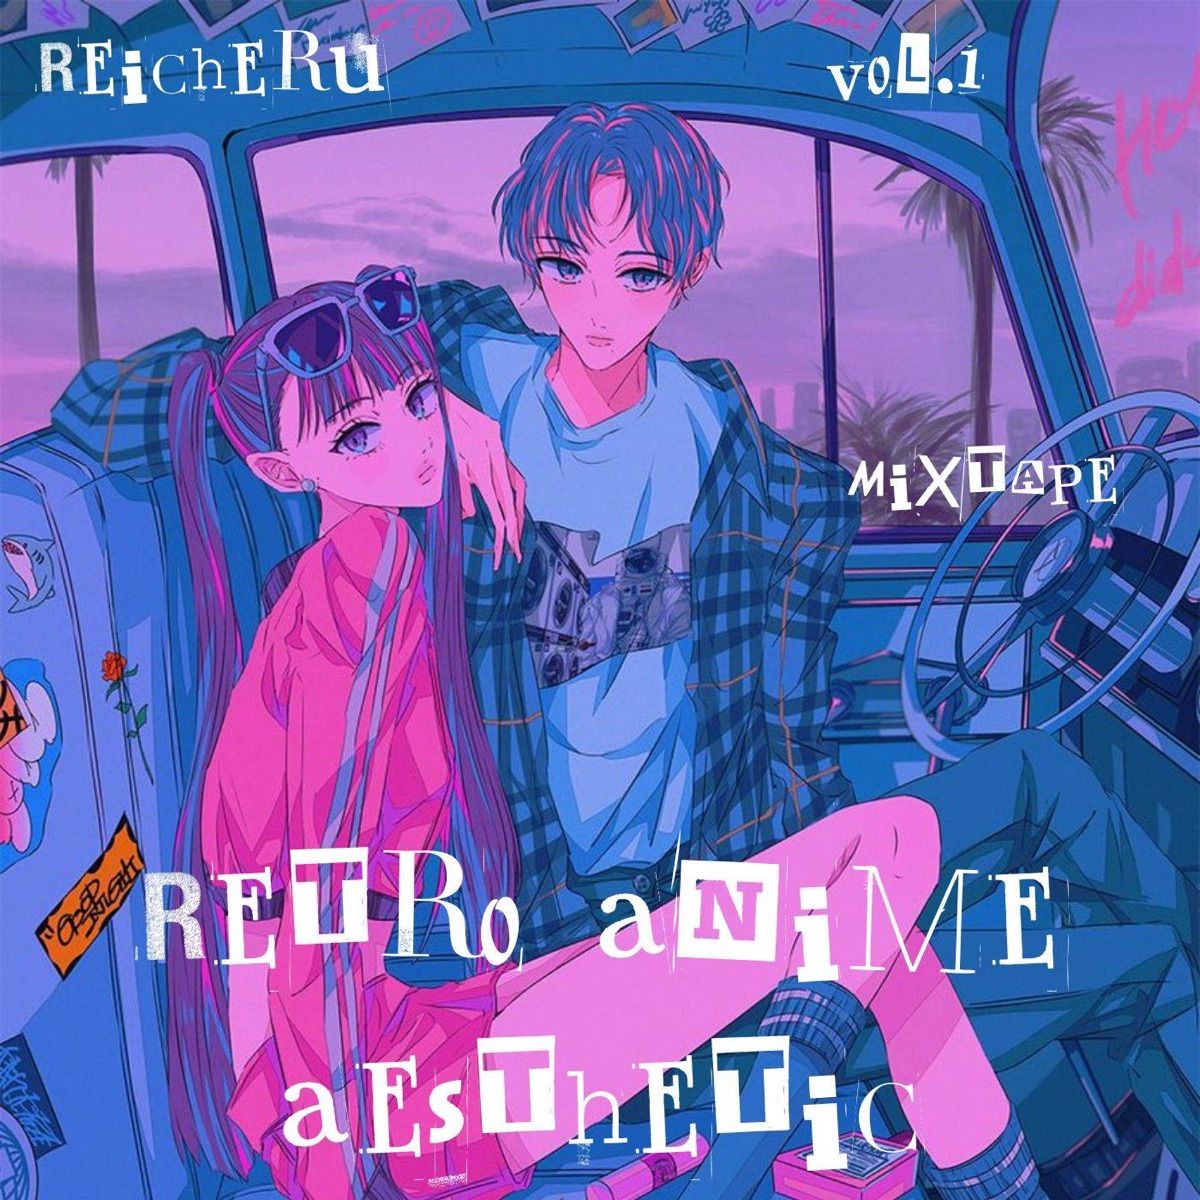 Retro Anime Aesthetic Mixtape Vol.1